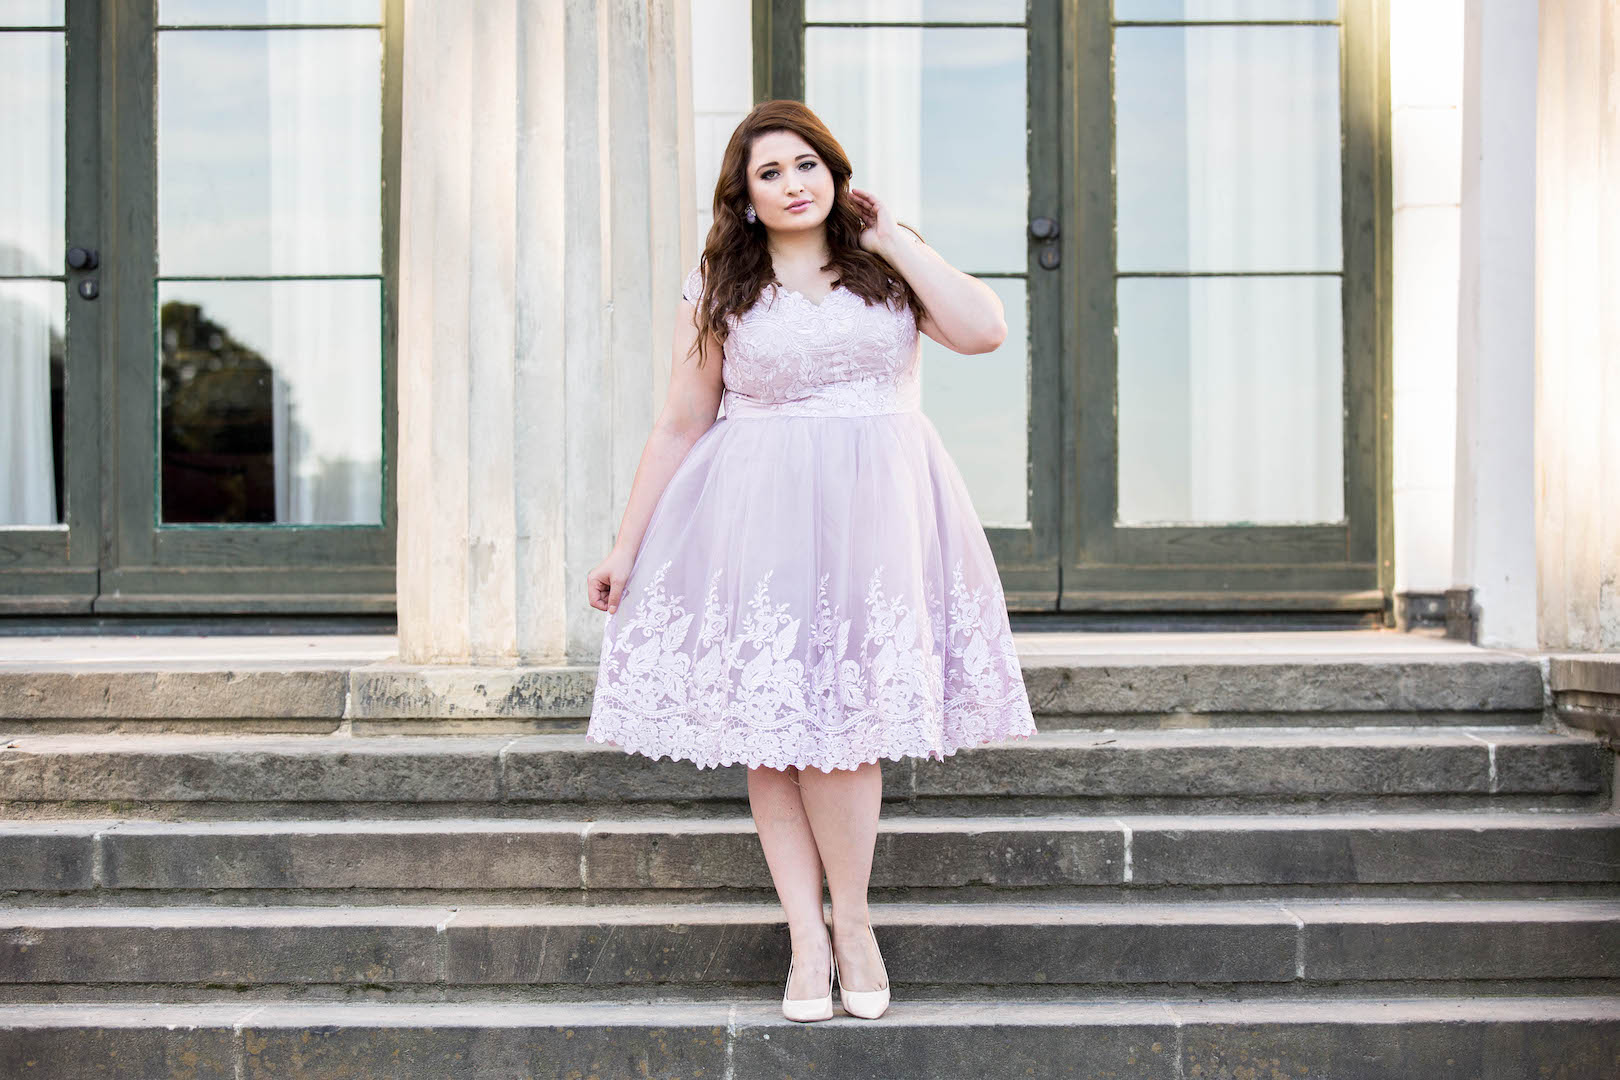 SchoenWild Plus Size Model und Blogger in einem rosa Tüllkleid von Chi Chi